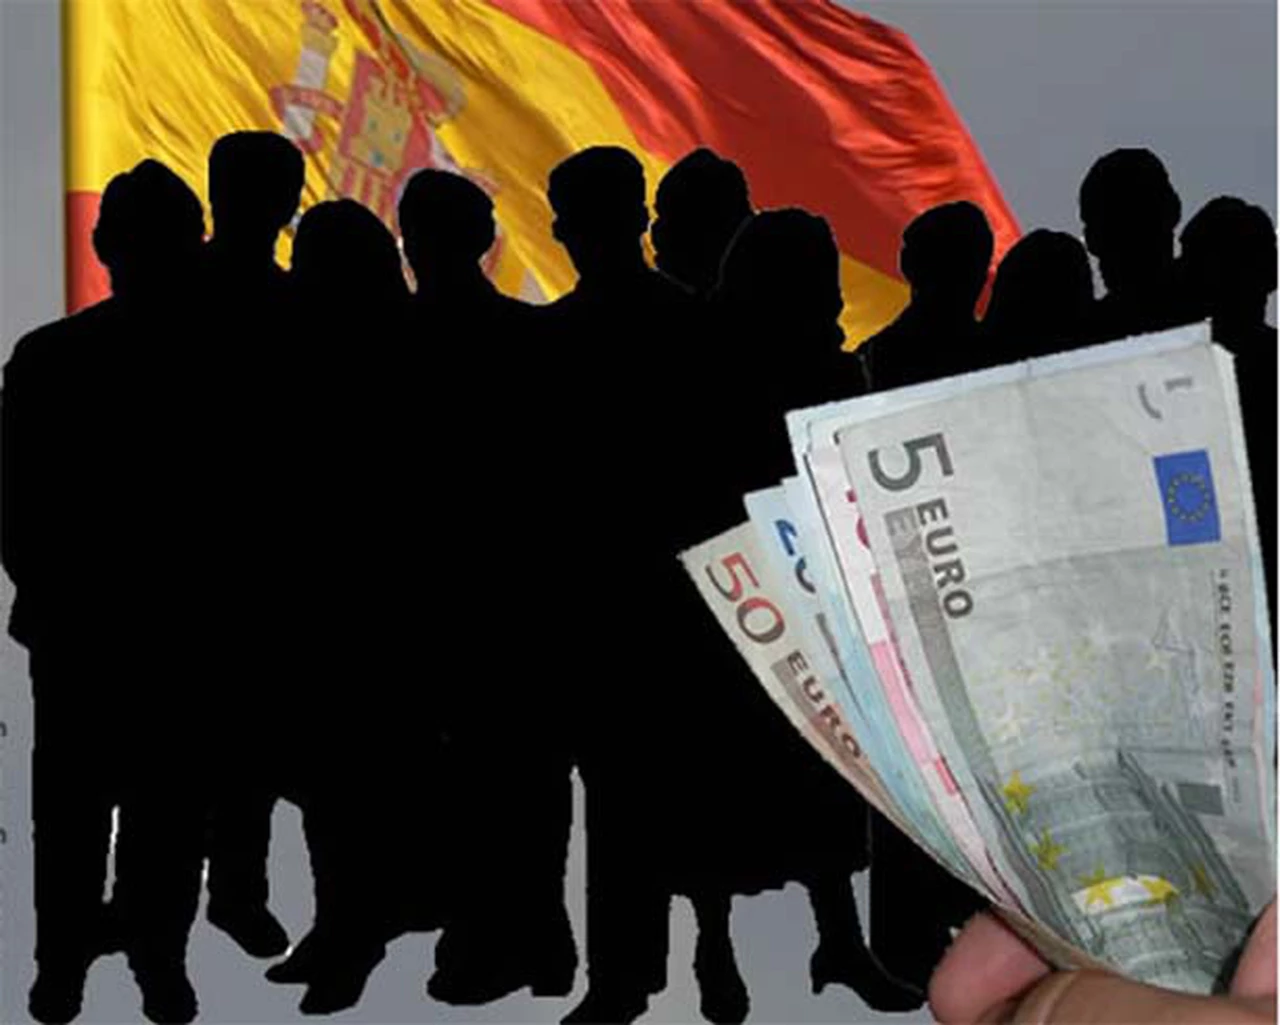 Españoles emigrantes: más de 50.000 personas salieron del paí­s en busca de trabajo